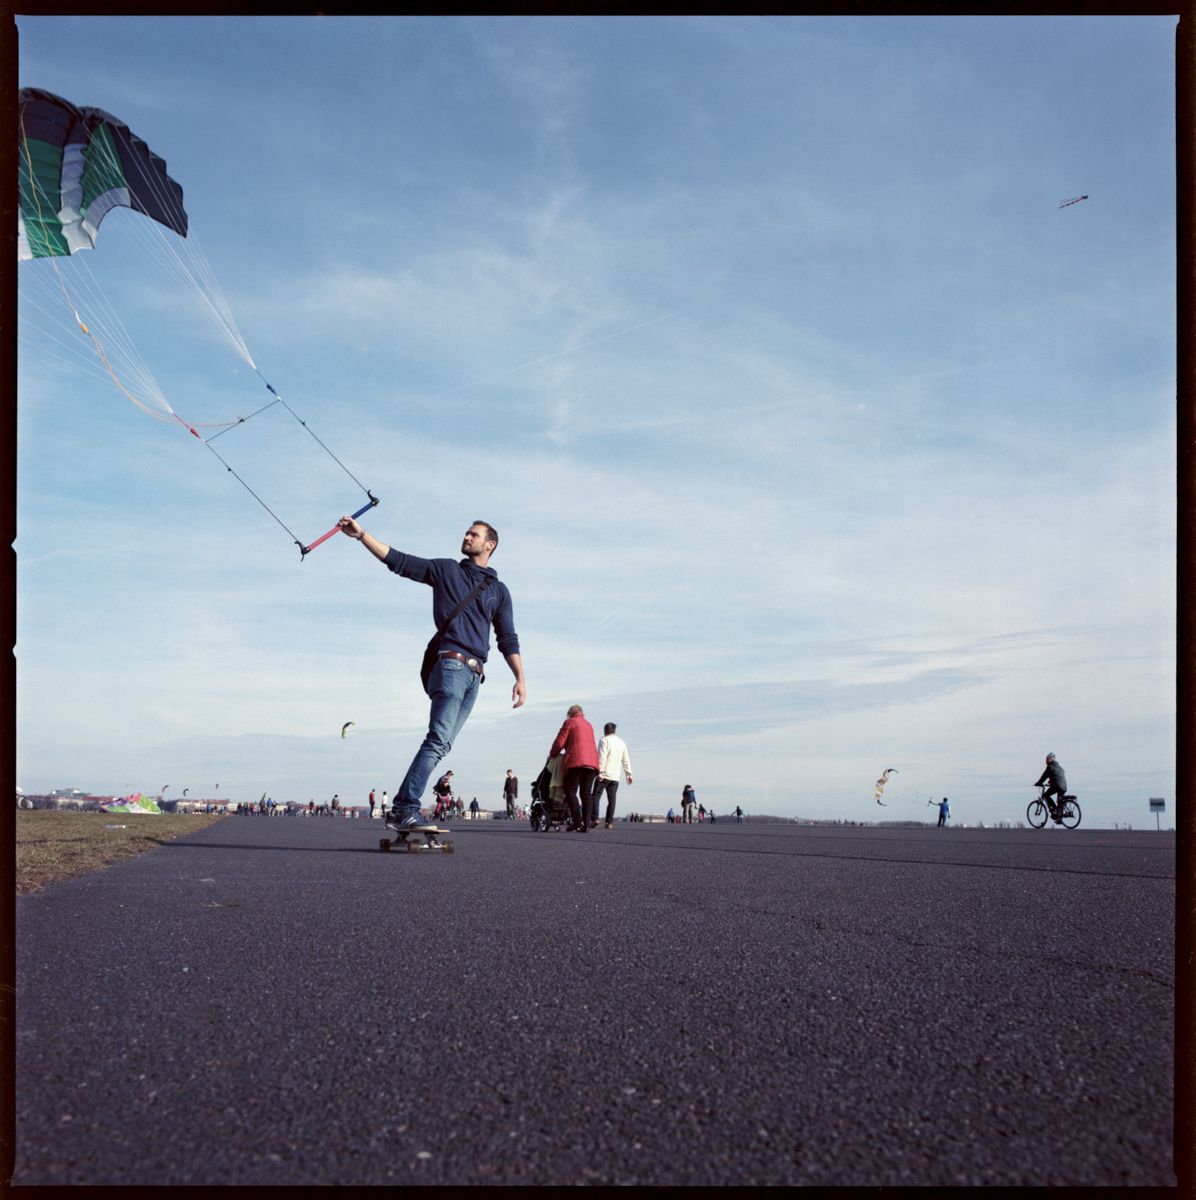 Kite Skater auf dem Rollfeld des Tempelhofer Feldes in Berlin Tempelhof - analoge Fotografie mit der Hasselblad